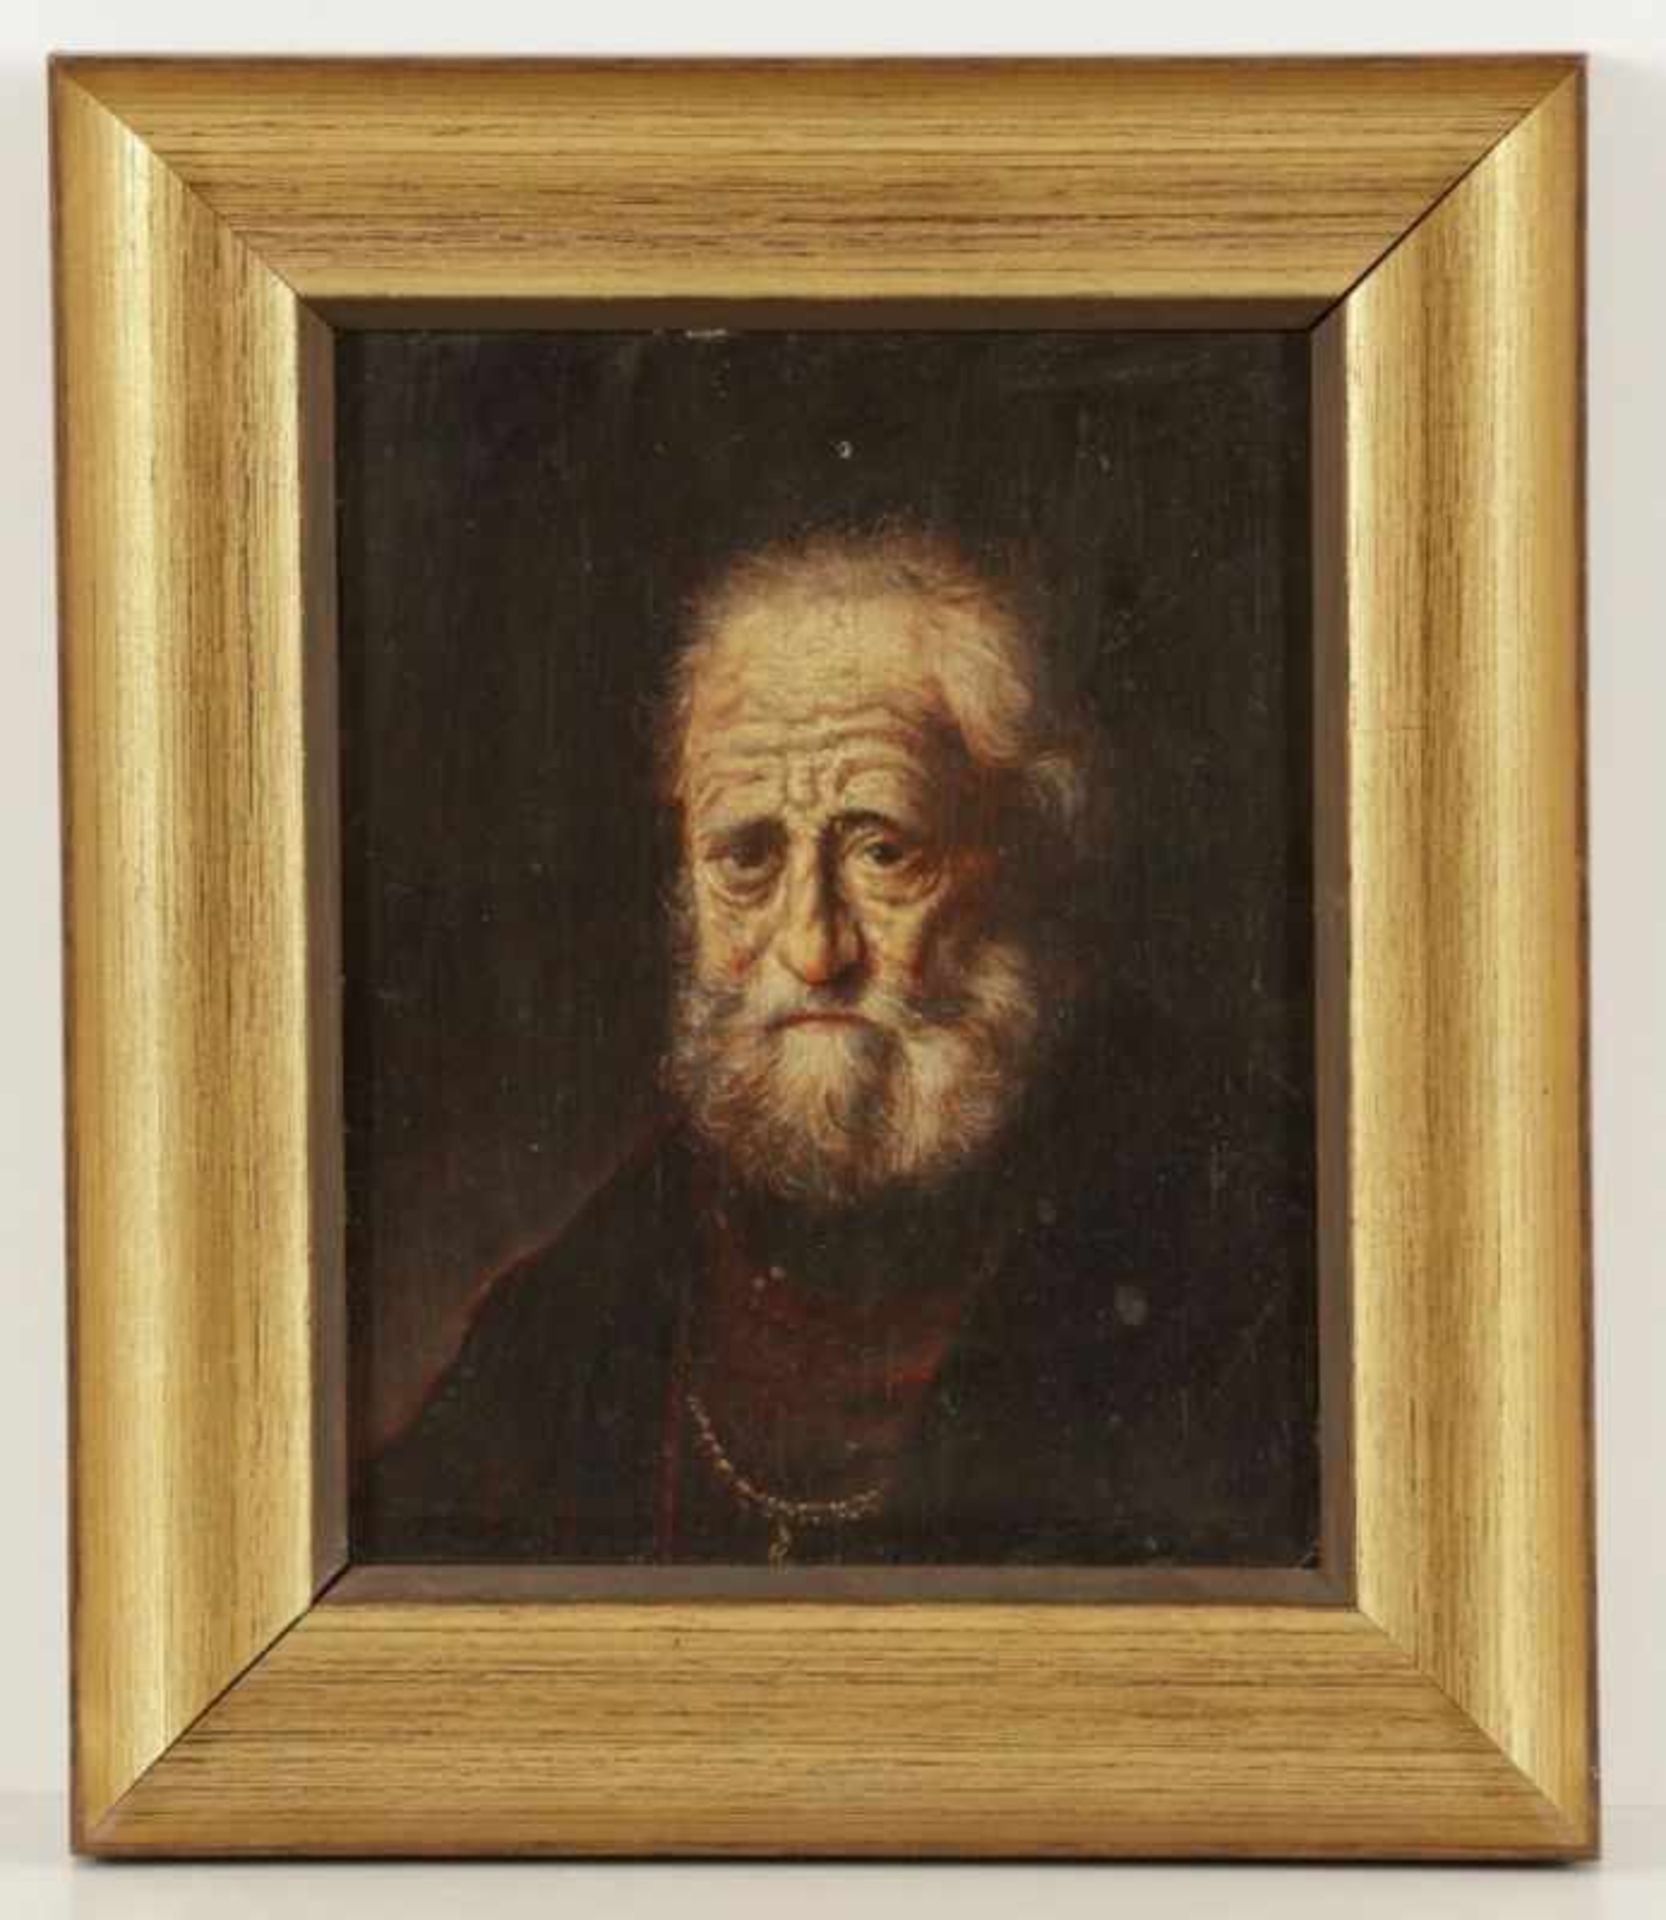 Künstler des 18. Jahrhunderts- Porträt eines alten Adligen - Öl/Holz. 18 x 14,5 cm. Rahmen. - - Bild 2 aus 2